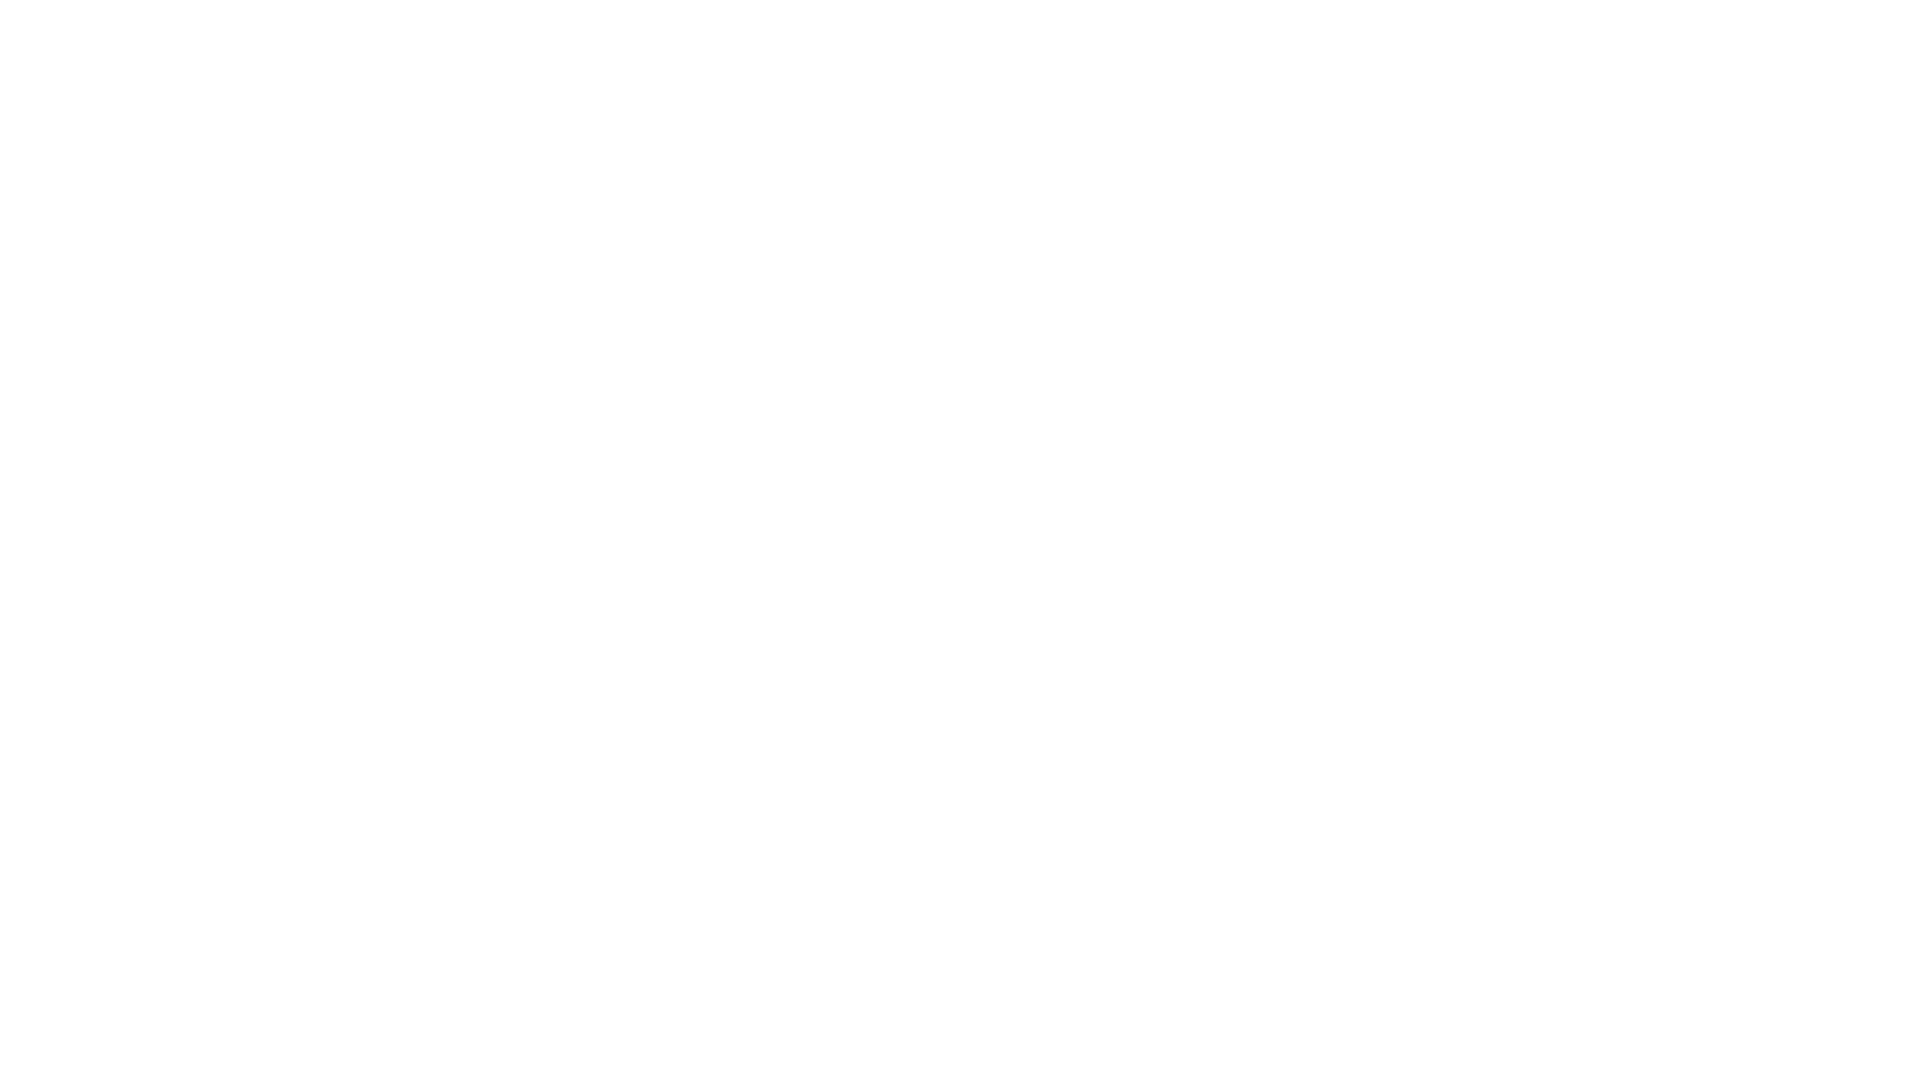 Abatec Pools - Producent naziemnych basenów drewnianych